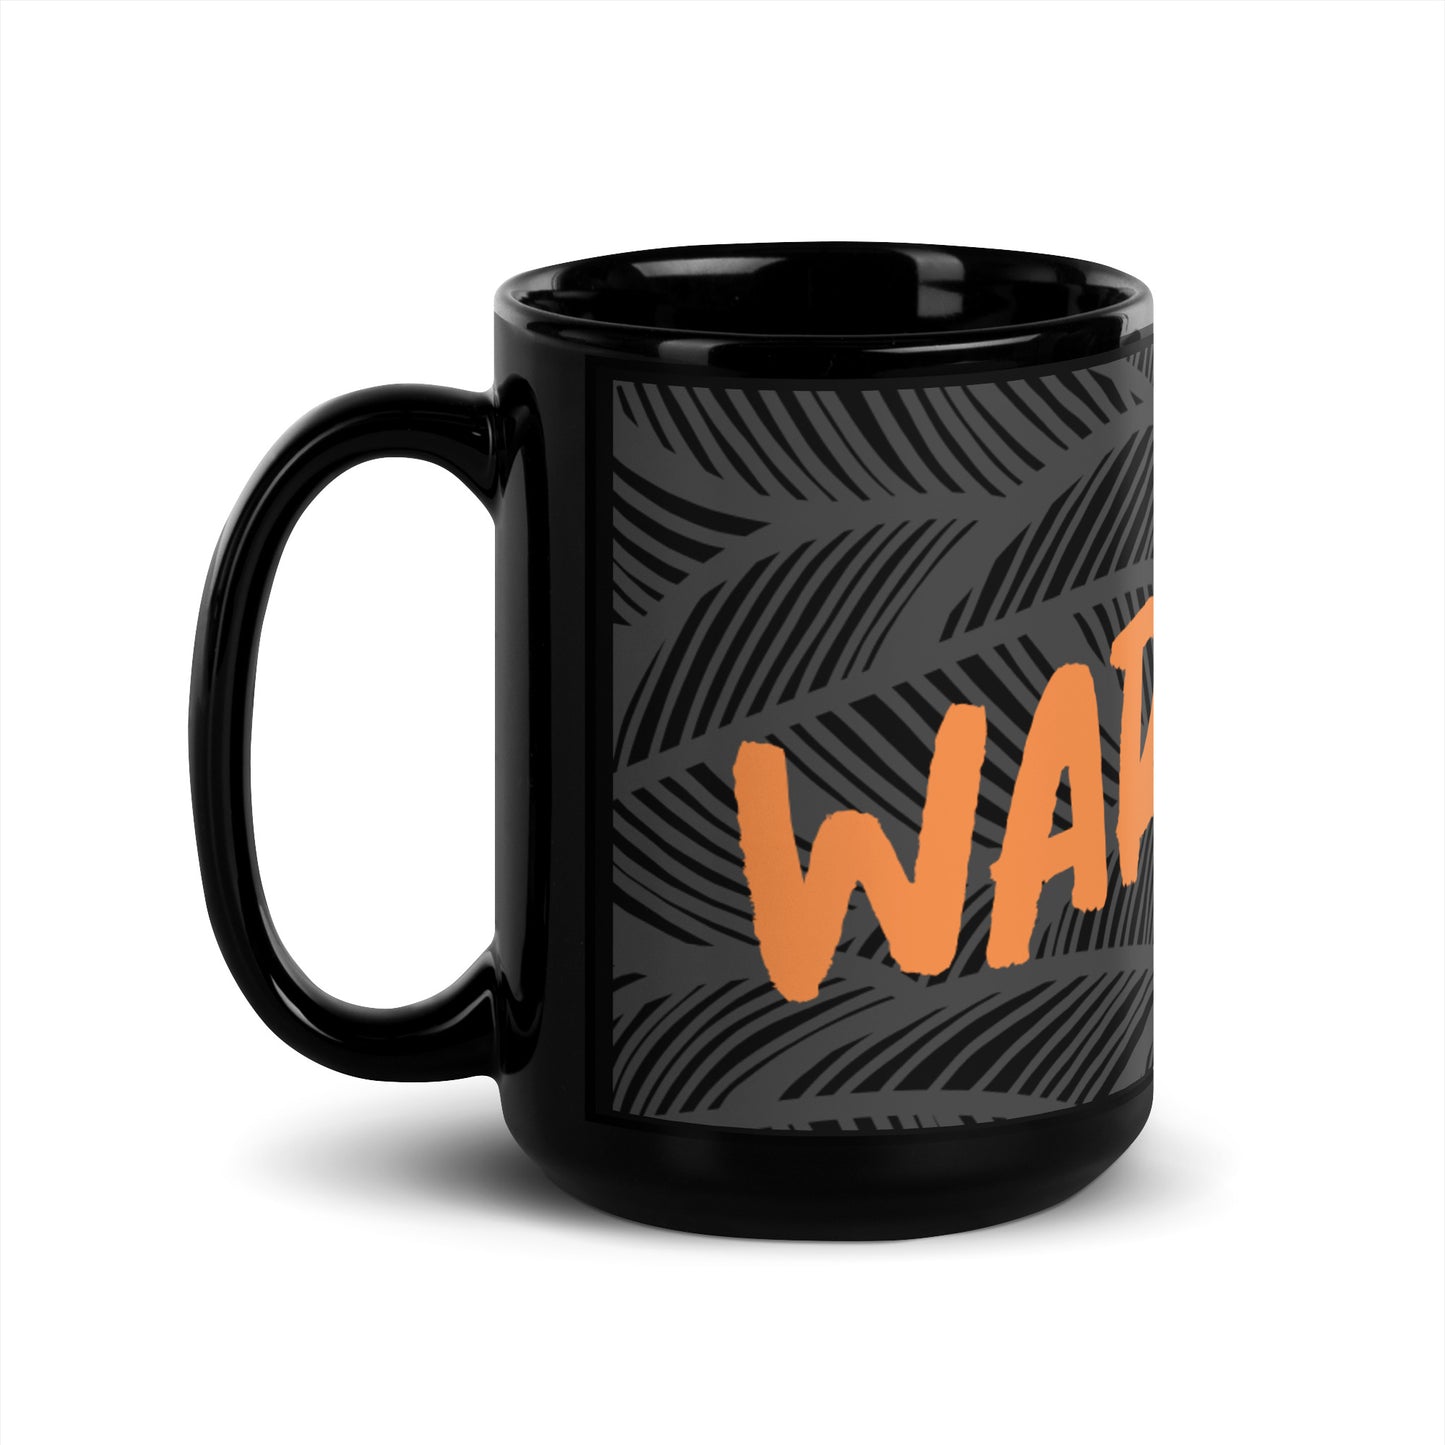 Black Abstract Black Glossy Mug - WARRIOR